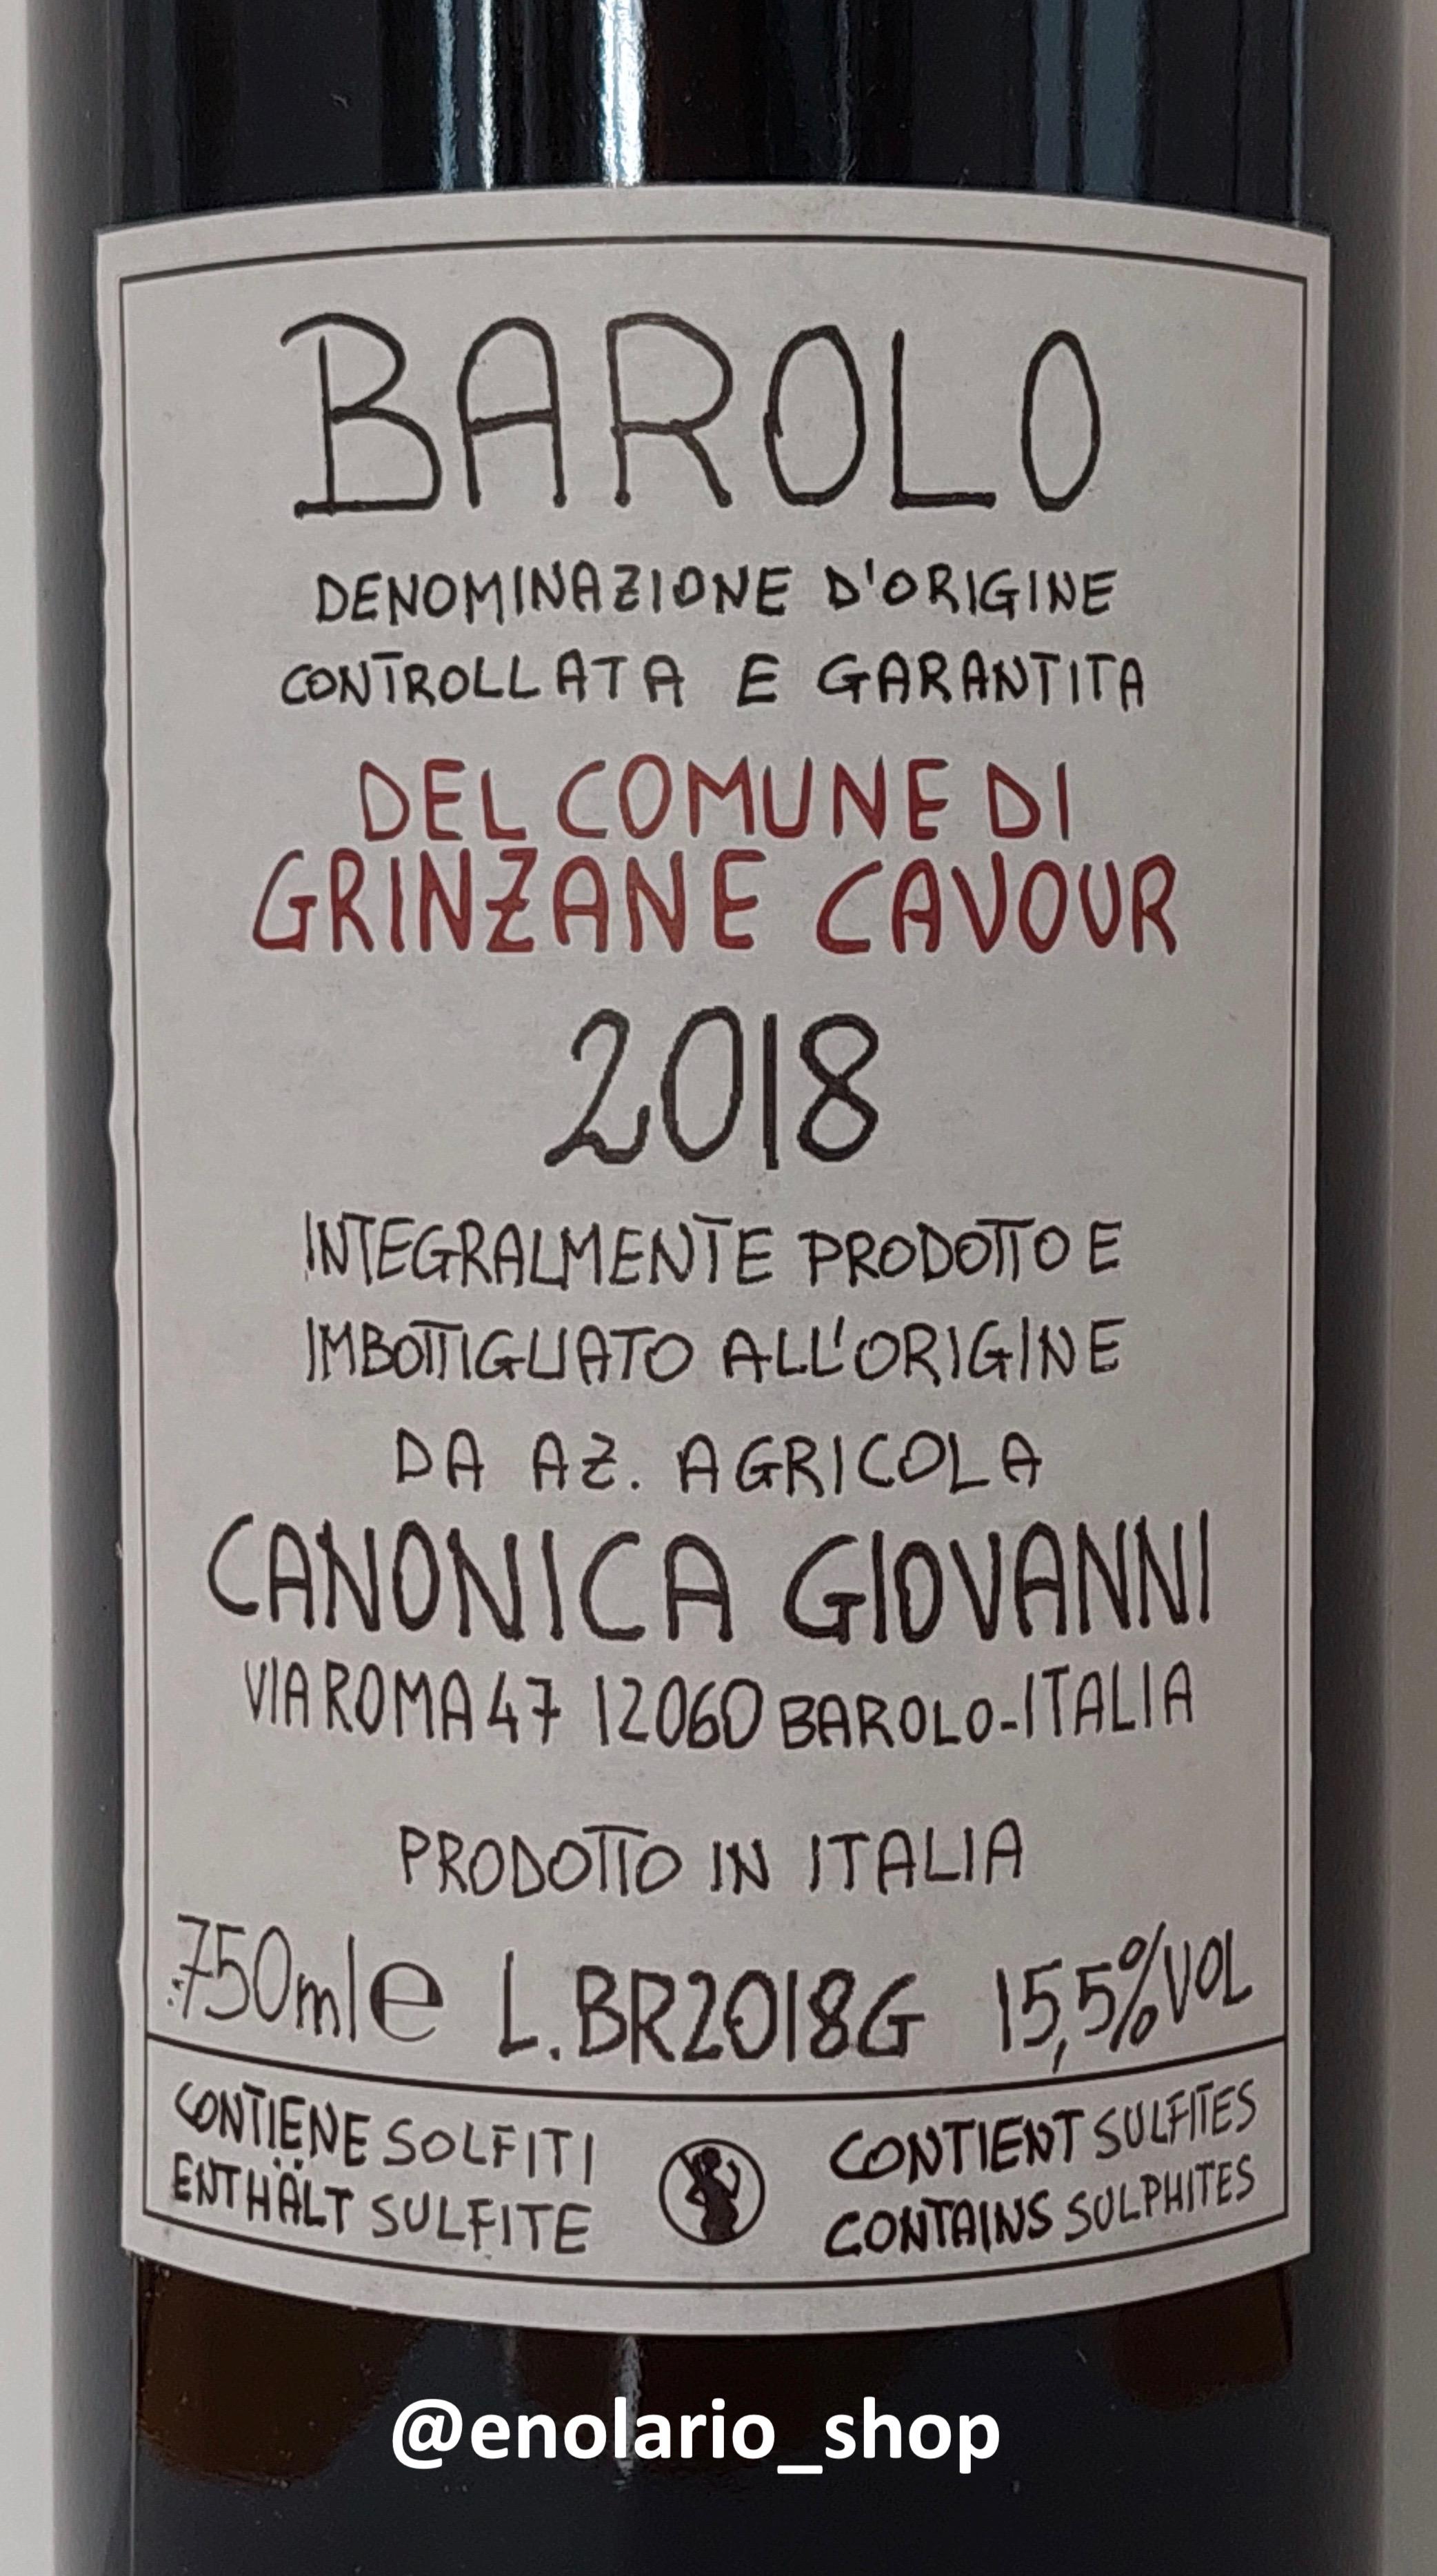 Giovanni Canonica Barolo Grinzane Cavour 2018